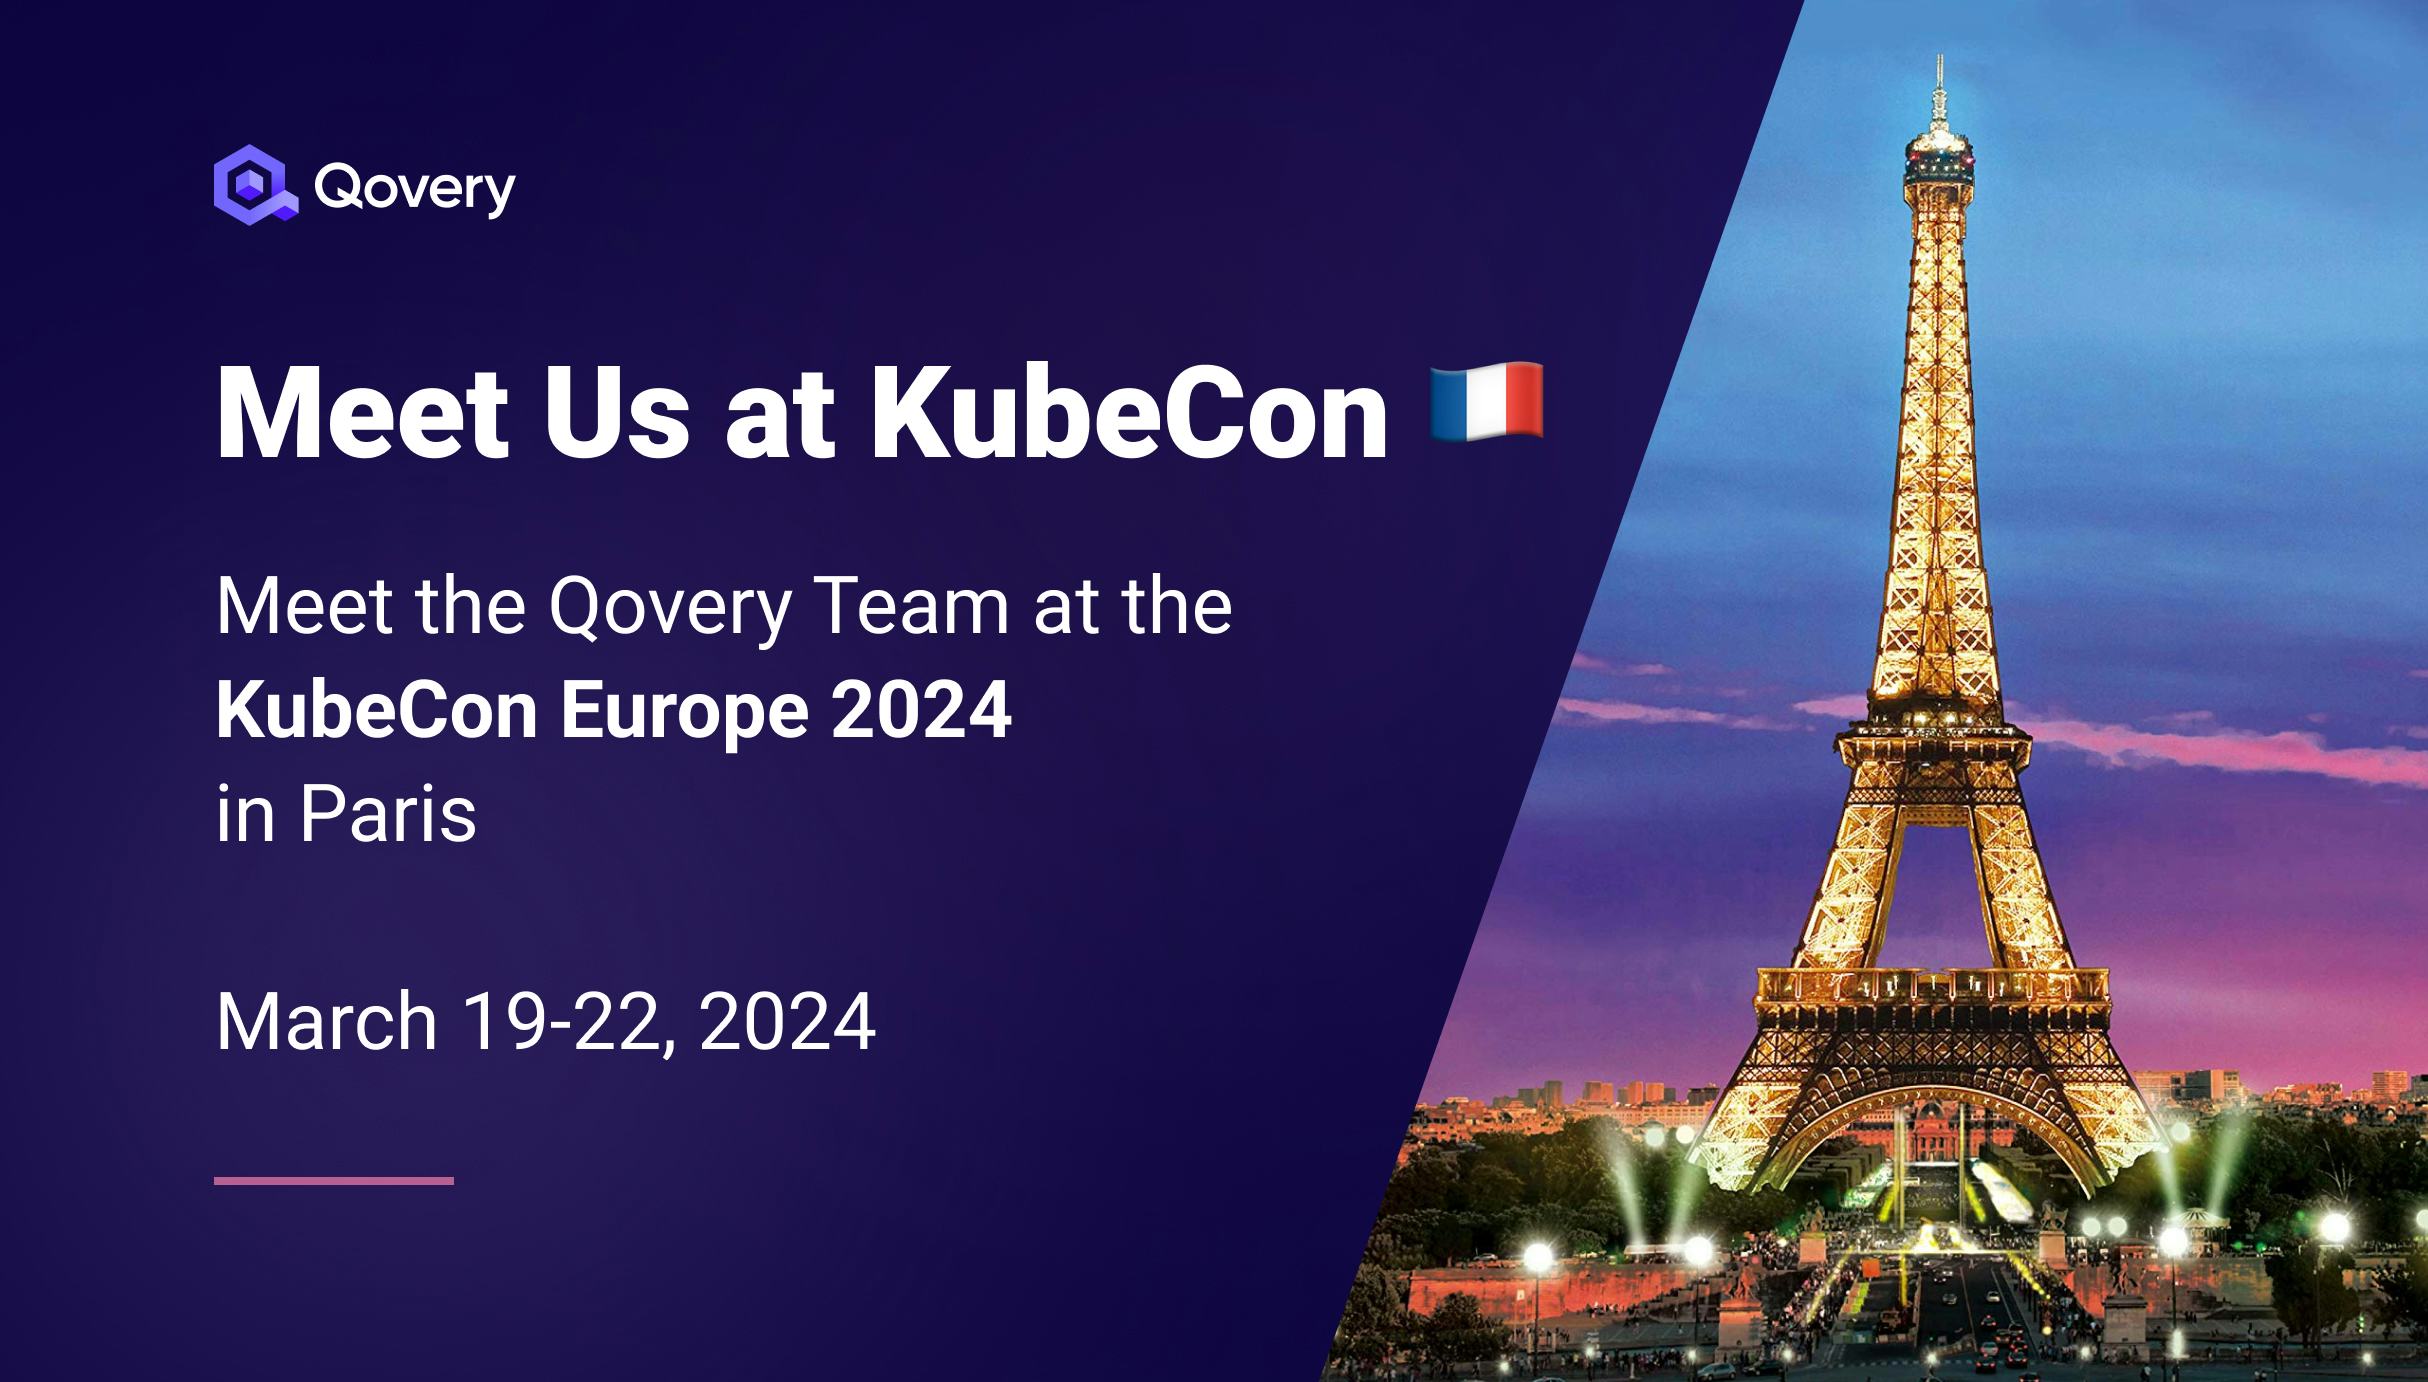 KubeCon Europe 2024 - Meet the Qovery Team  - Qovery